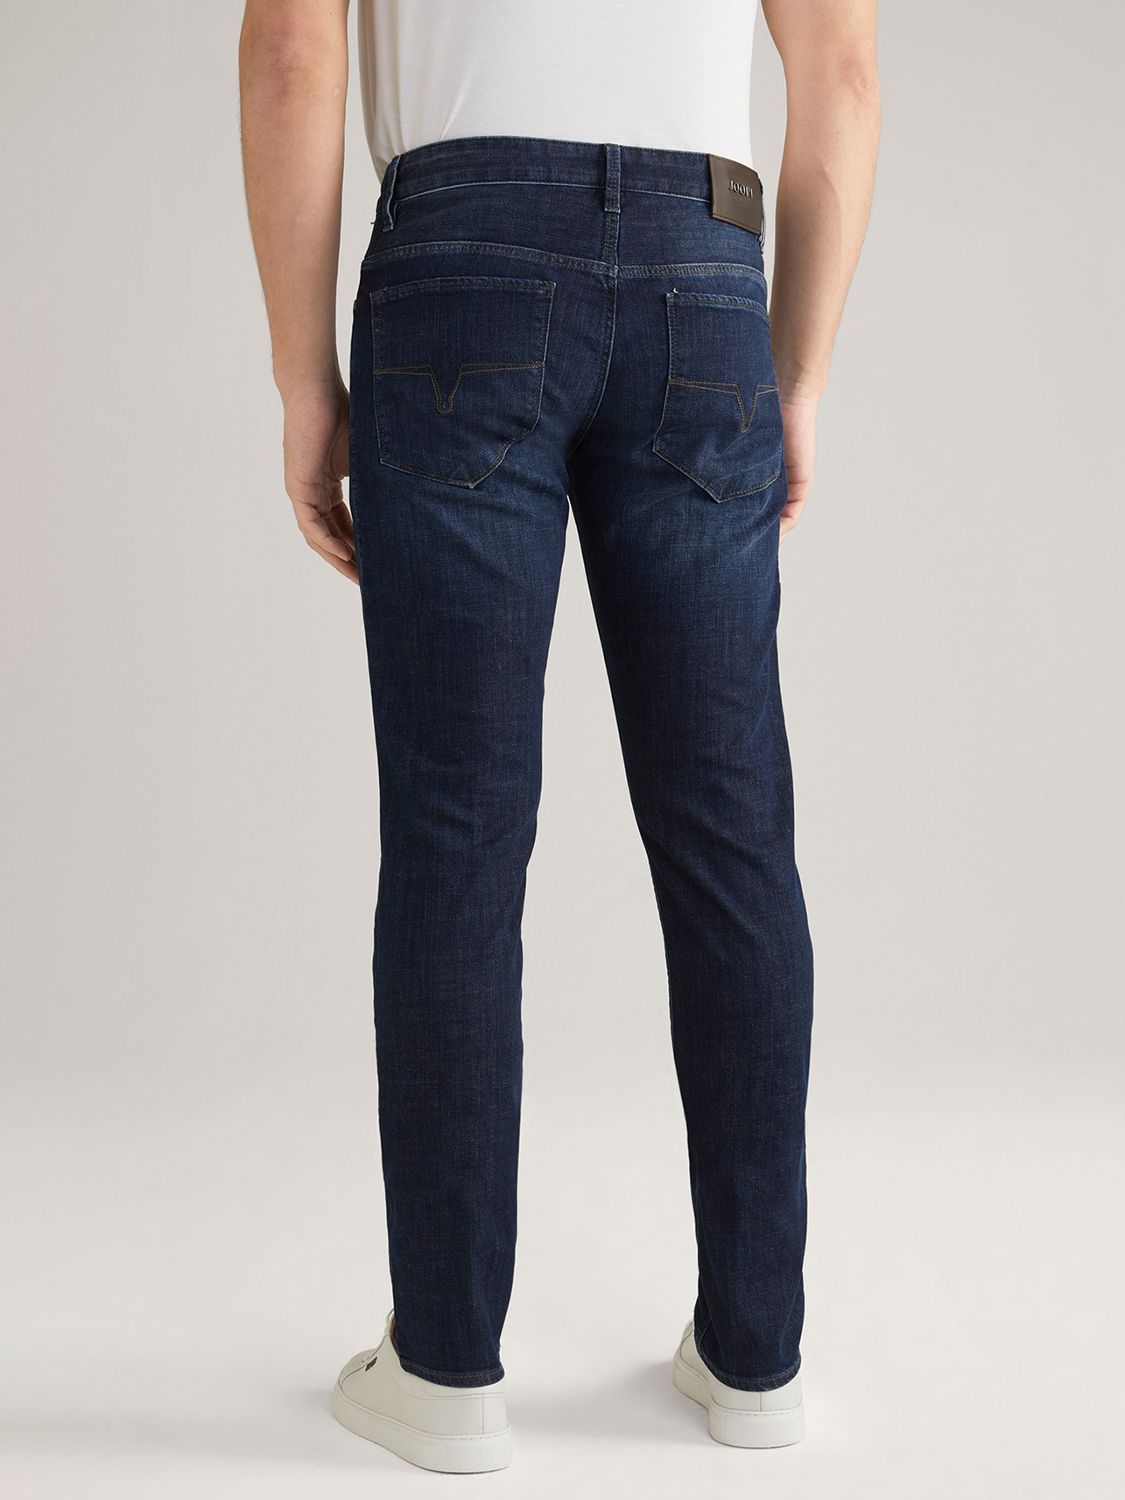 JOOP! Stephen Slim Fit Jeans, Navy, W36/L34